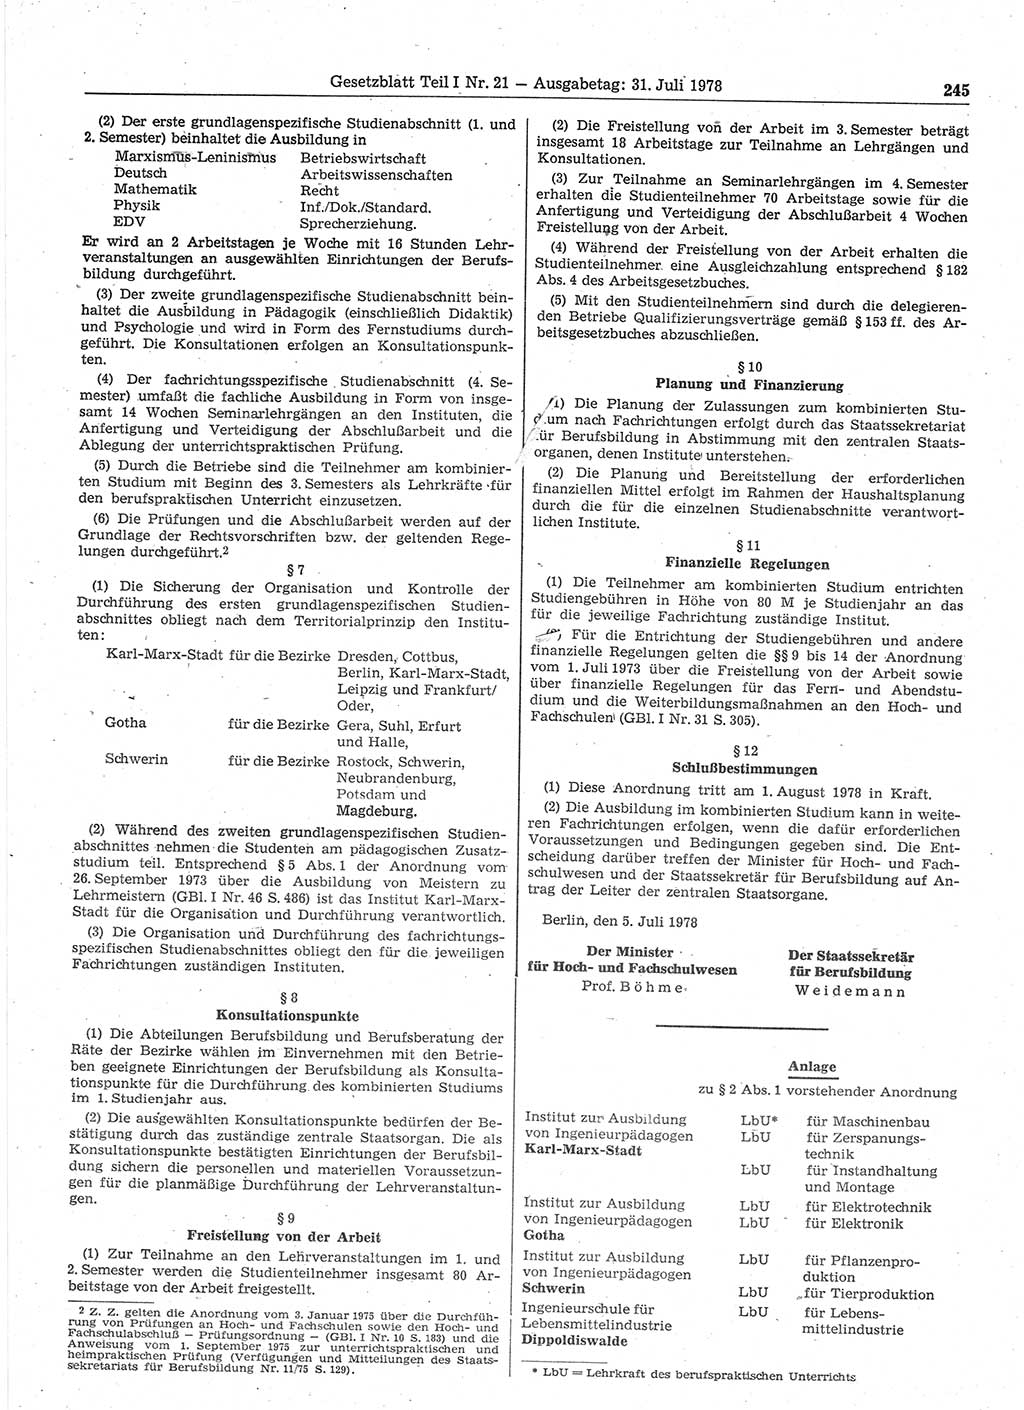 Gesetzblatt (GBl.) der Deutschen Demokratischen Republik (DDR) Teil Ⅰ 1978, Seite 245 (GBl. DDR Ⅰ 1978, S. 245)